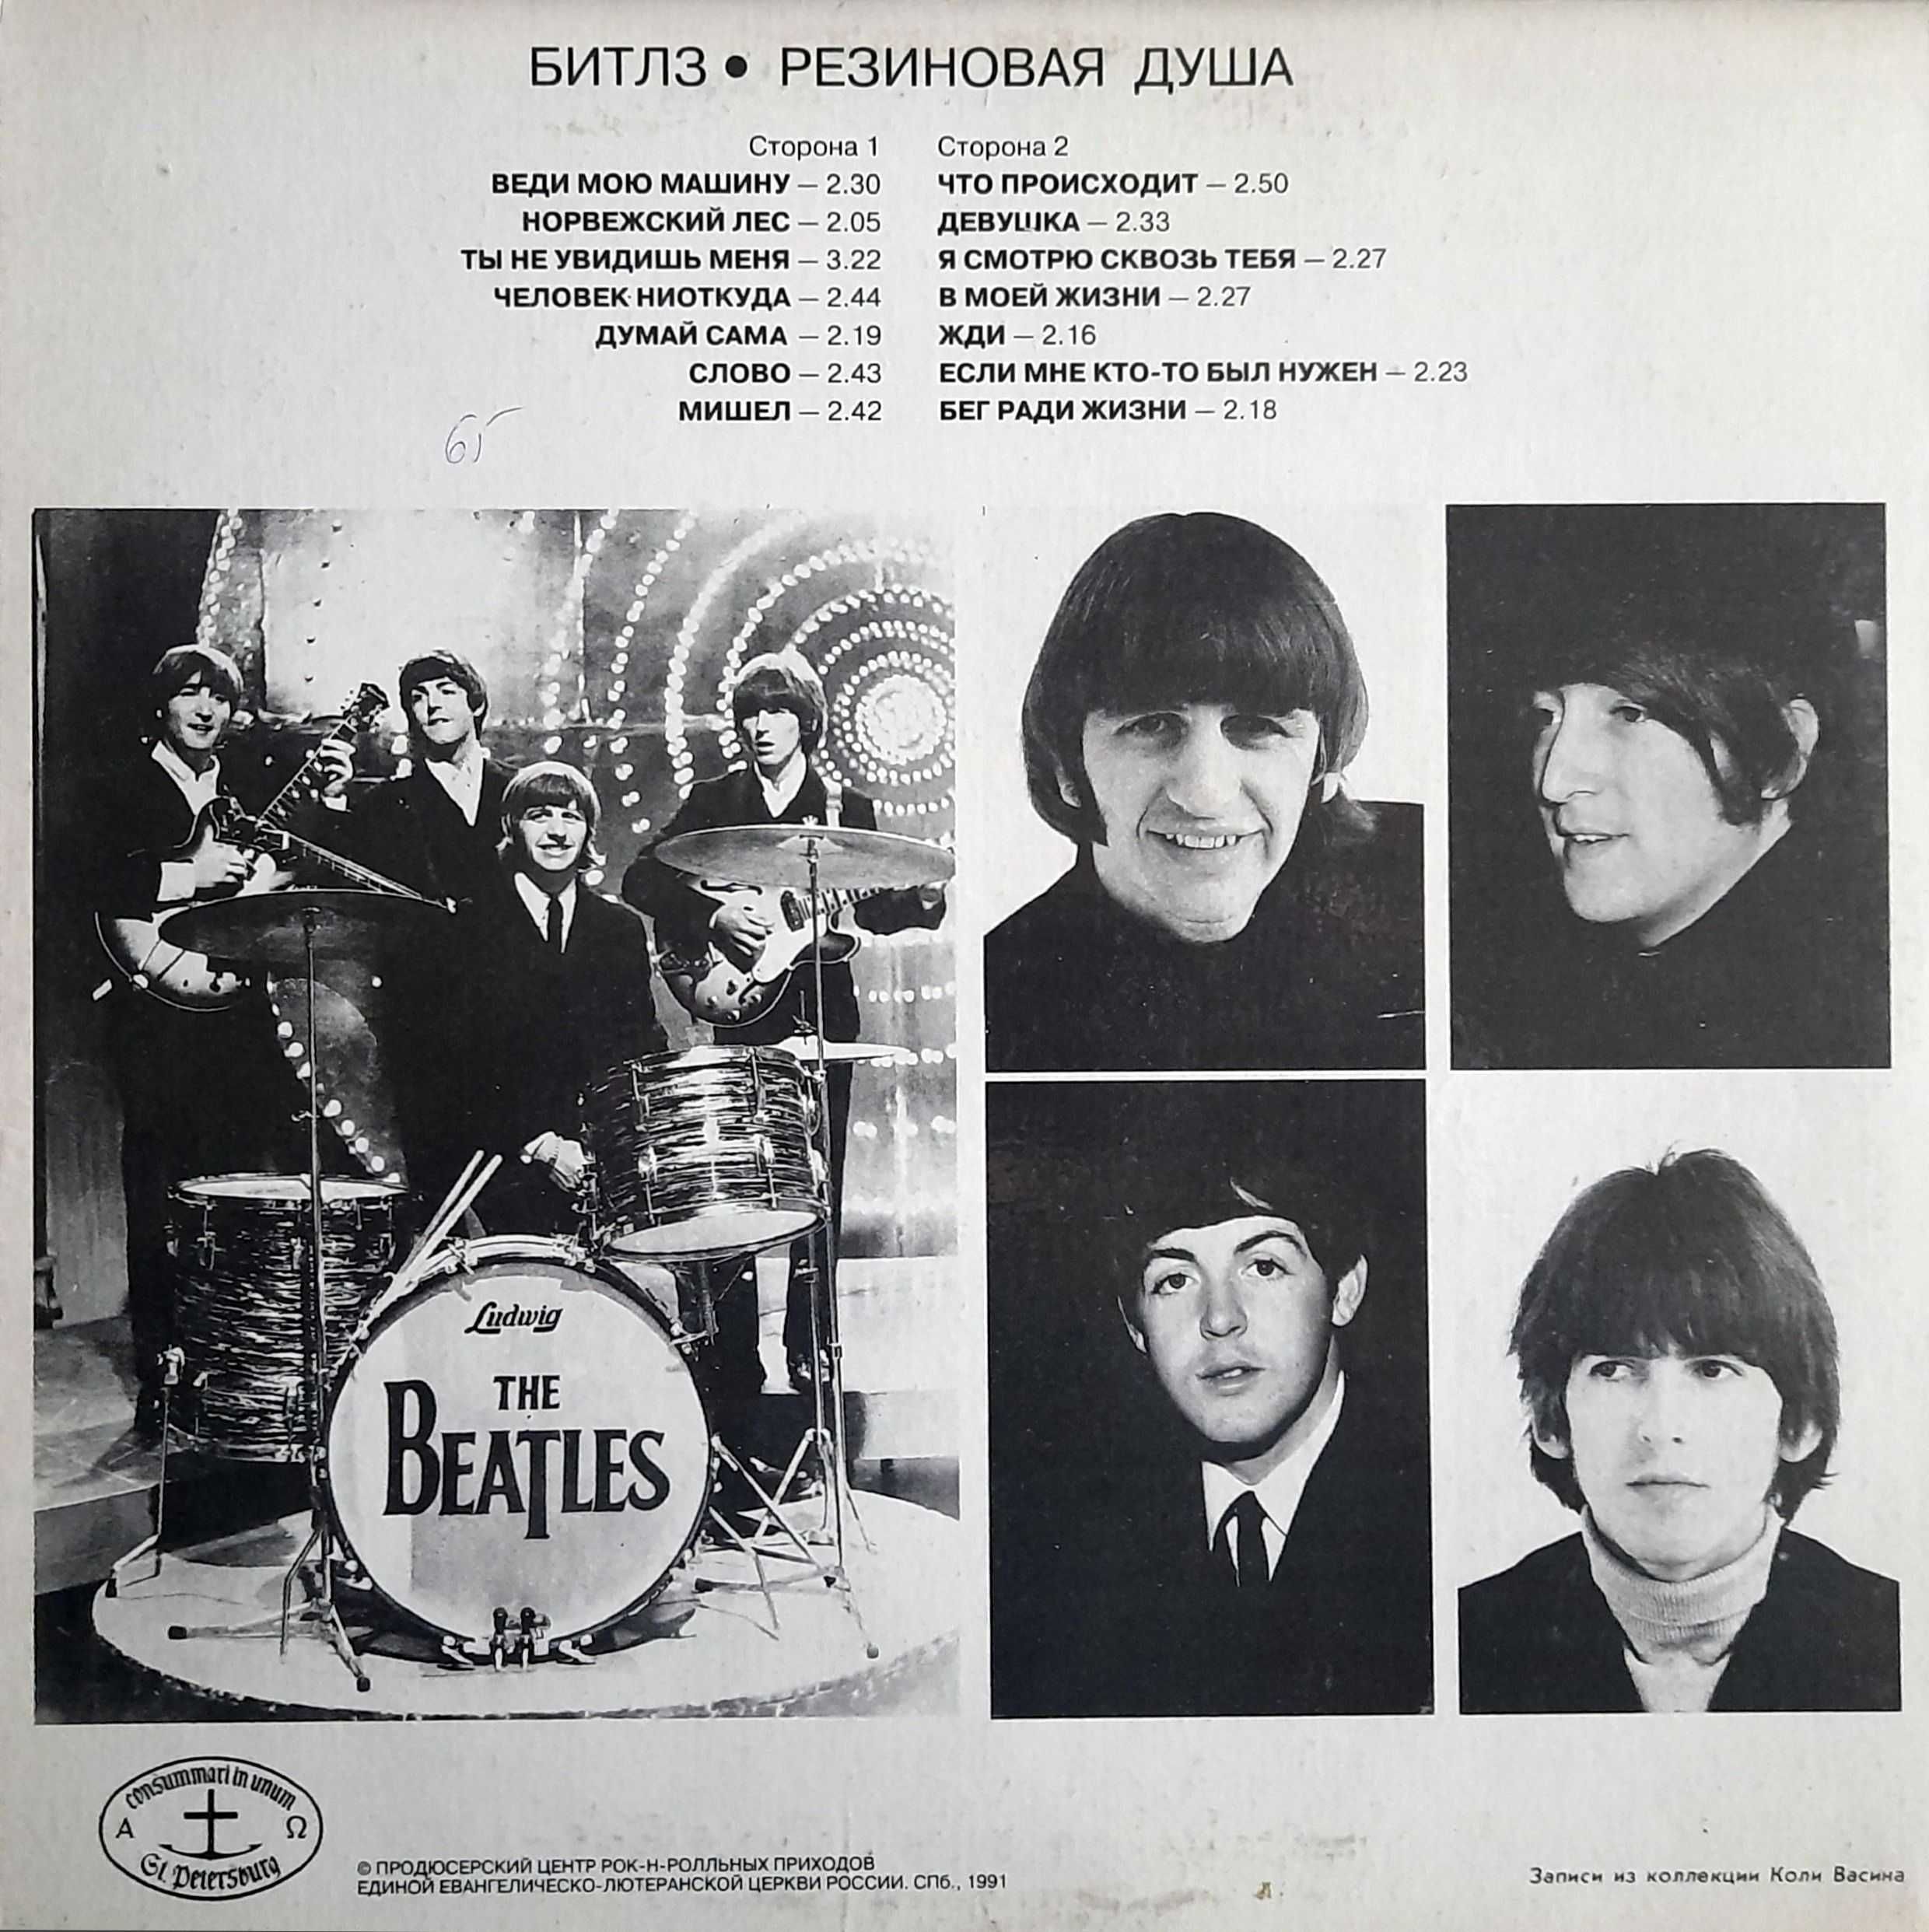 The Beatles  - Rubber Soul (1965) LP